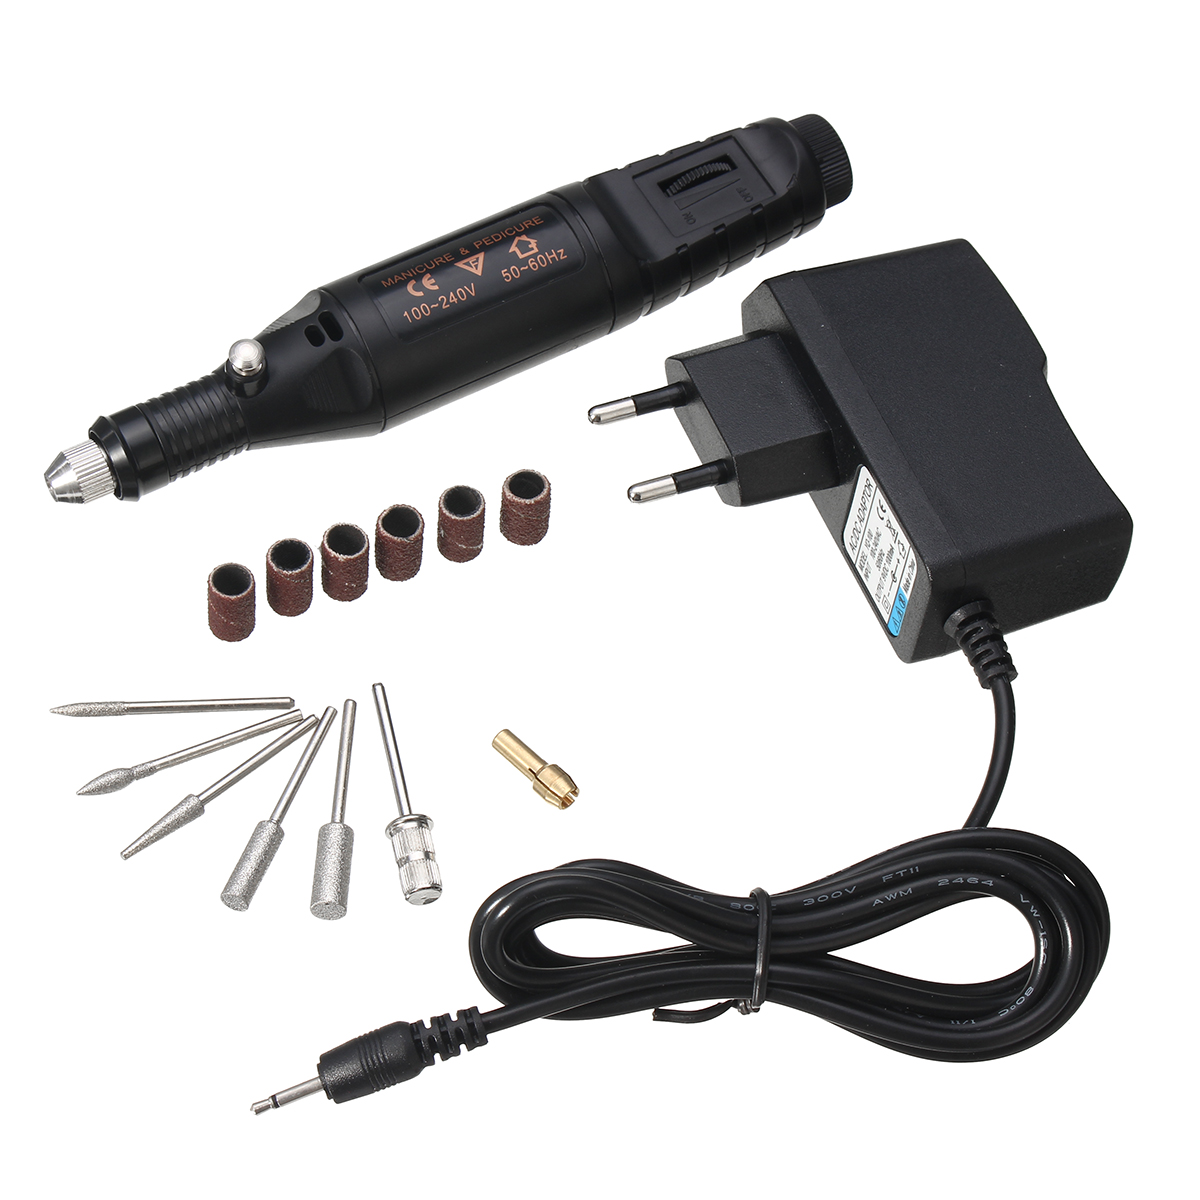 

15pcs Micro Engraver Pen DIY Electric Drill Engraving Engraver Pen Carve Tool